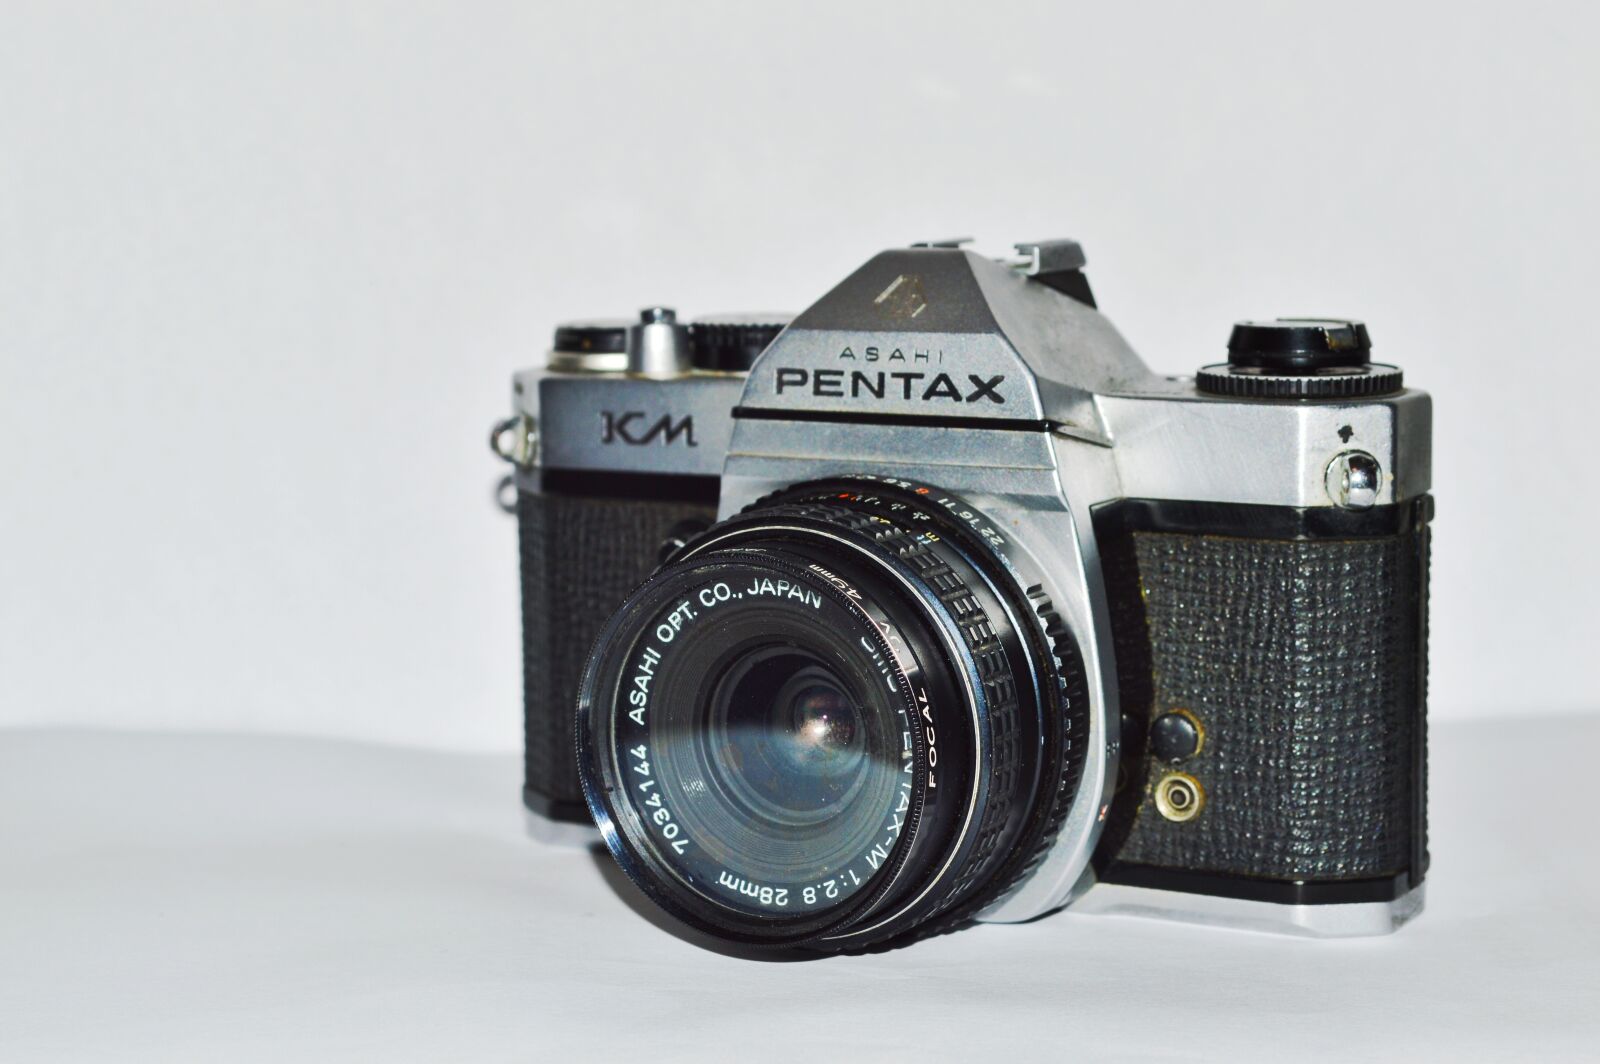 Nikon D3200 sample photo. Lens, antique, classic photography